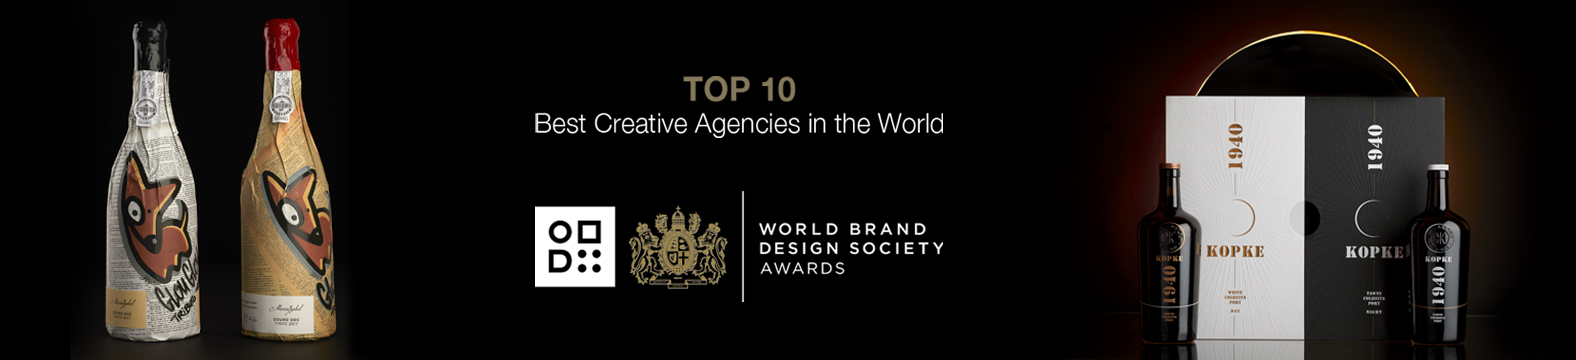 Omdesign no Top10 das melhores agências criativas